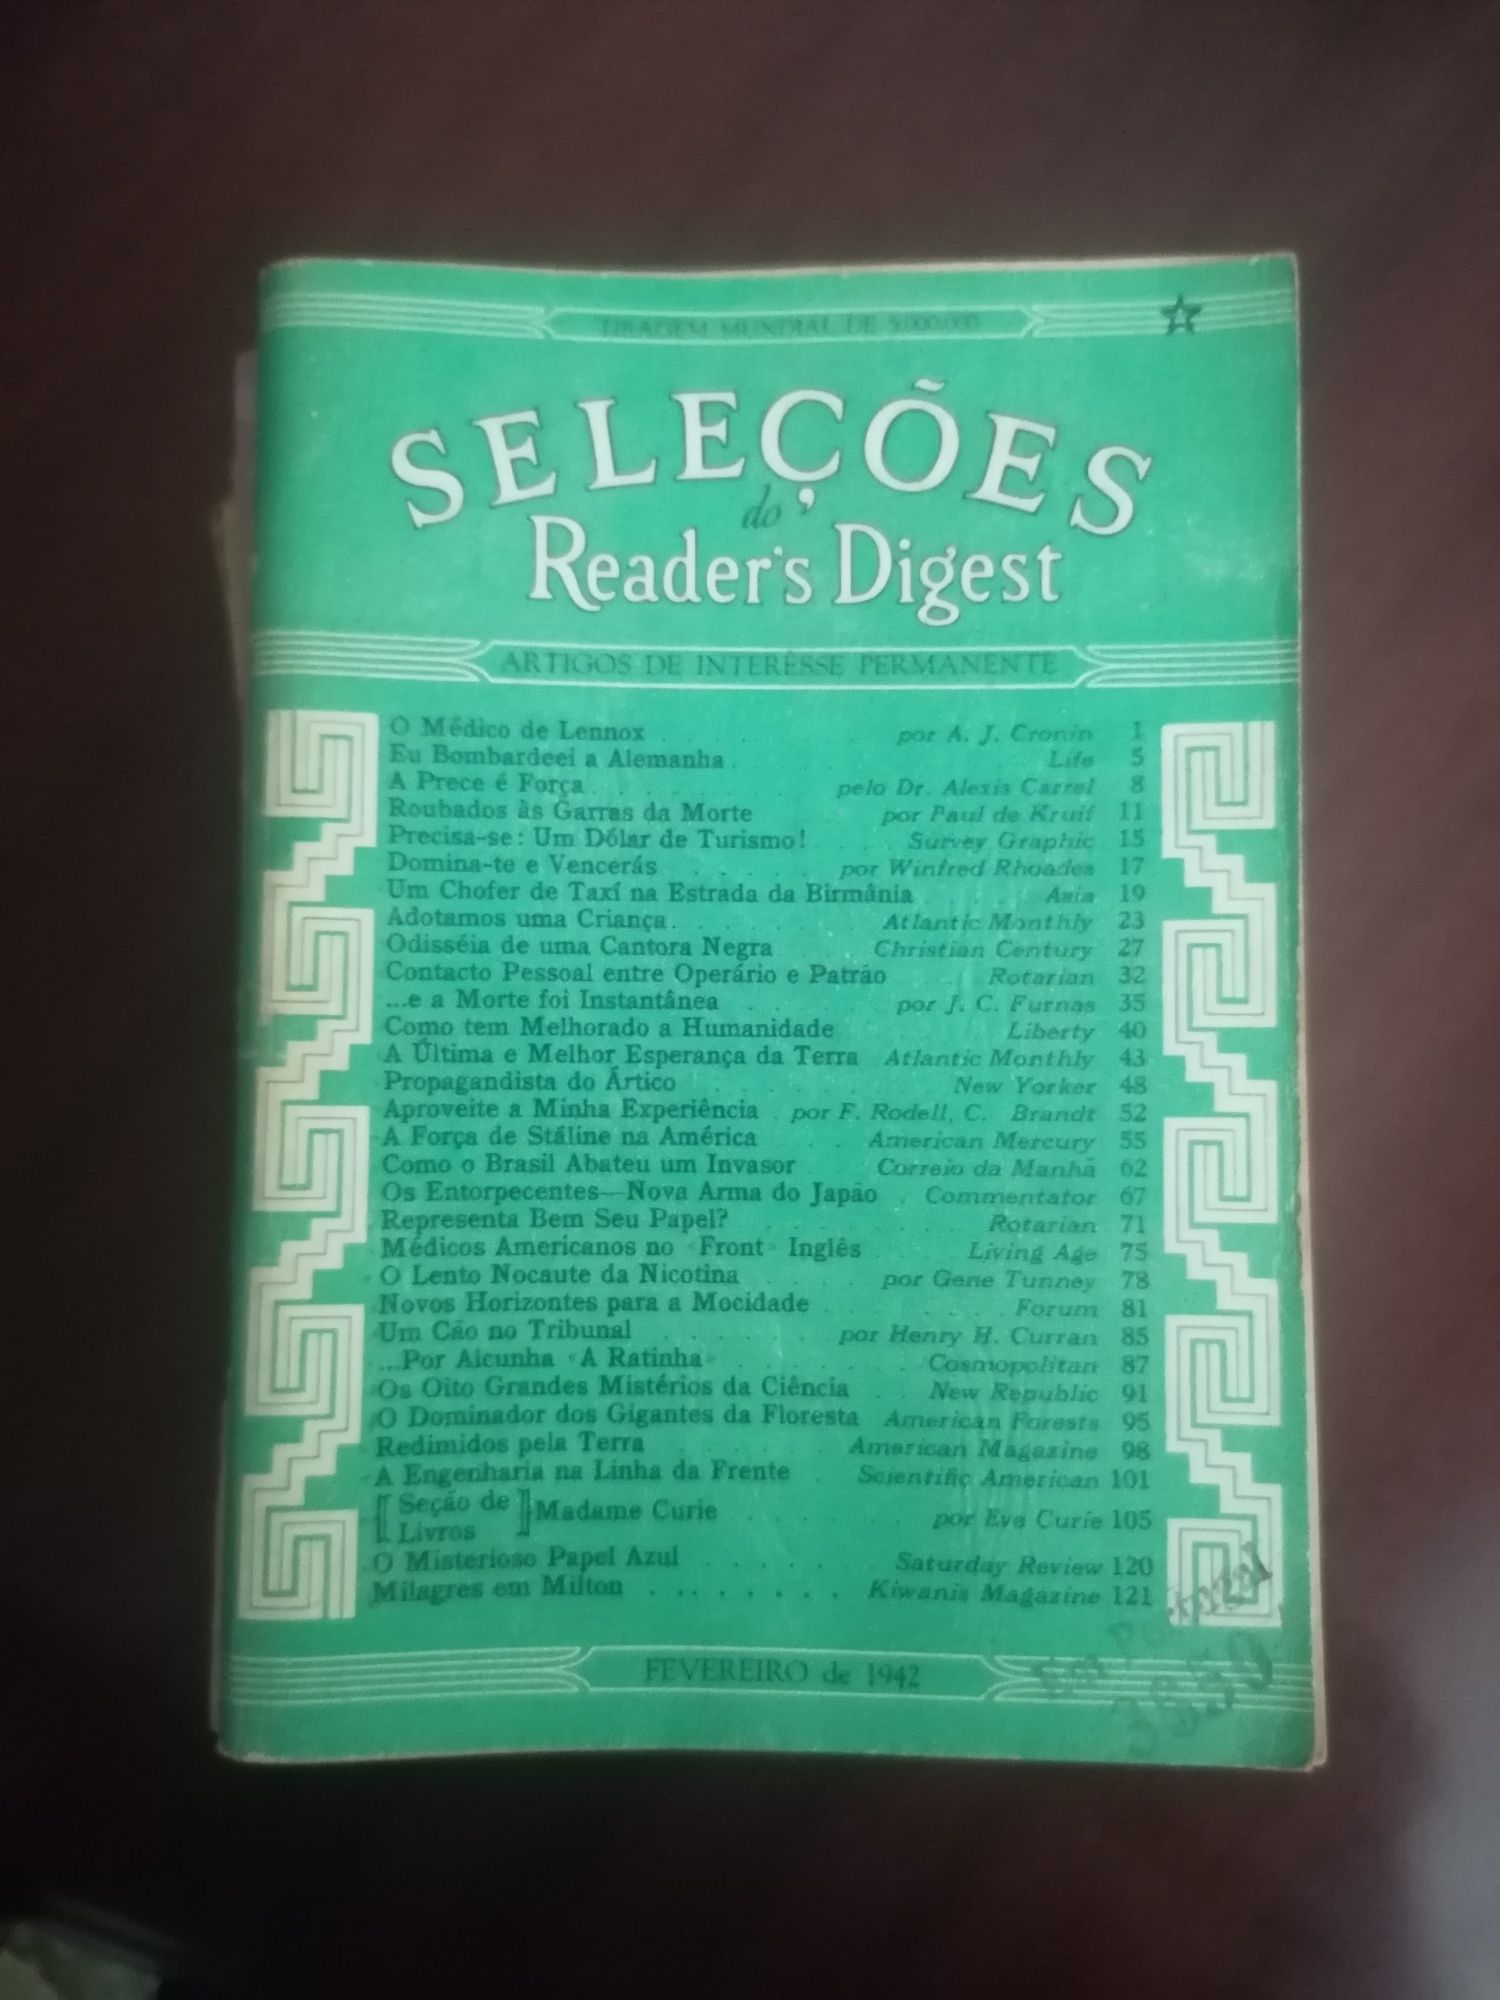 Coleção "Selecções Reader's Digest" de 1942